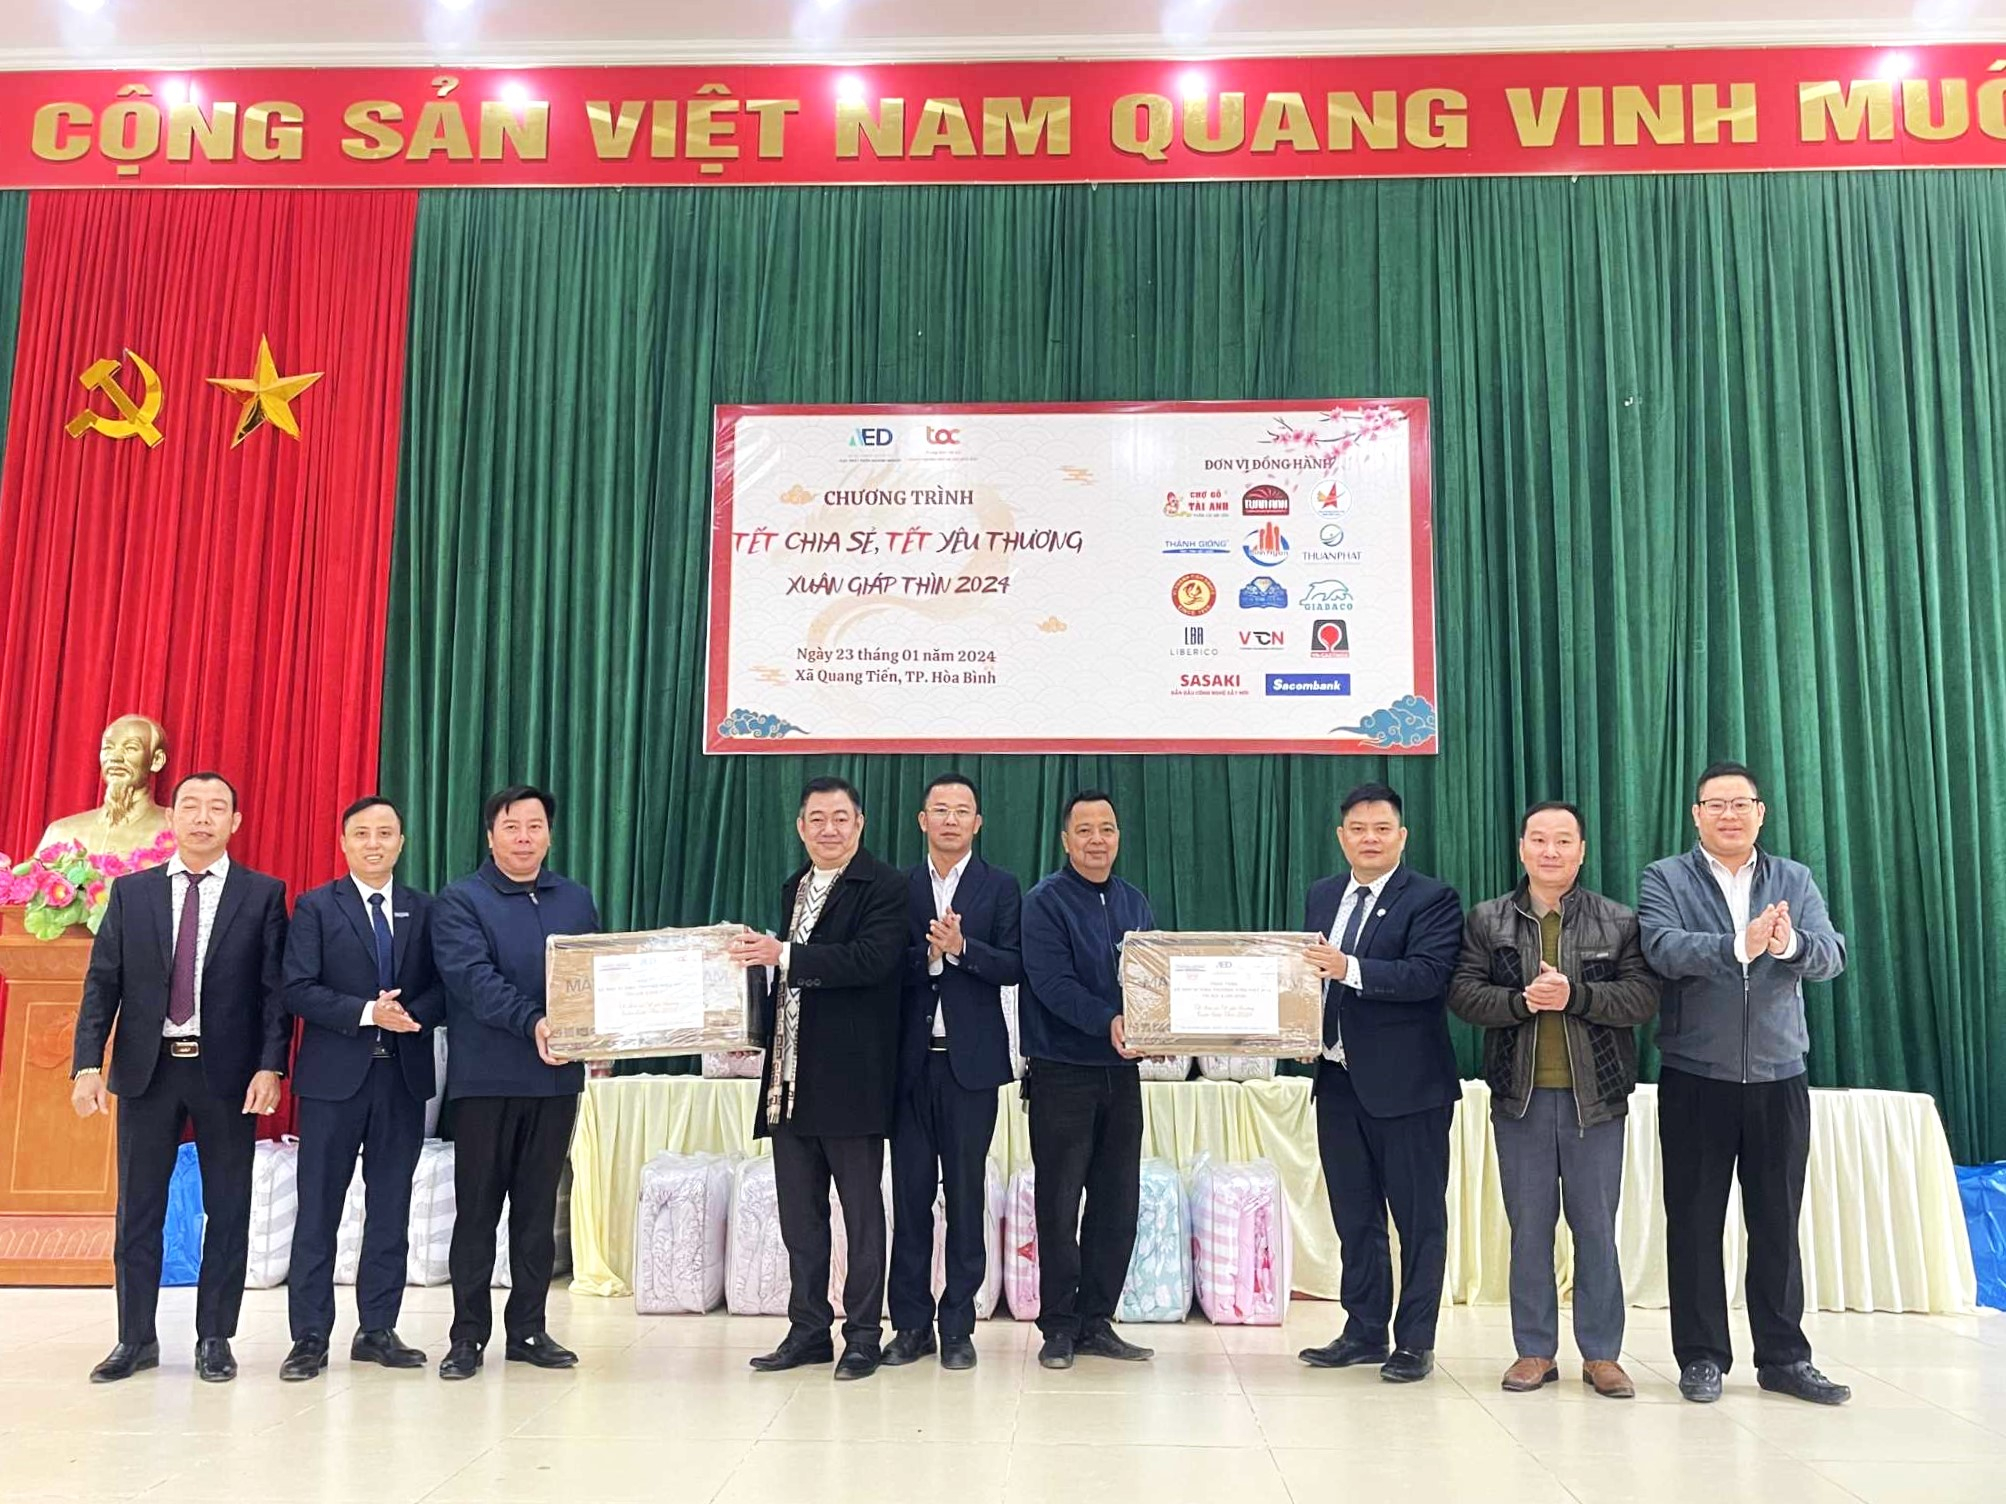 Đoàn công tác của Trung tâm Hỗ trợ doanh nghiệp vừa và nhỏ phía Bắc đã cùng các mạnh thường quân trao tặng quà Tết cho các hộ gia đình chính sách, người khuyết tật và các hộ nghèo trong địa bàn xã Quang Tiến, TP Hòa Bình